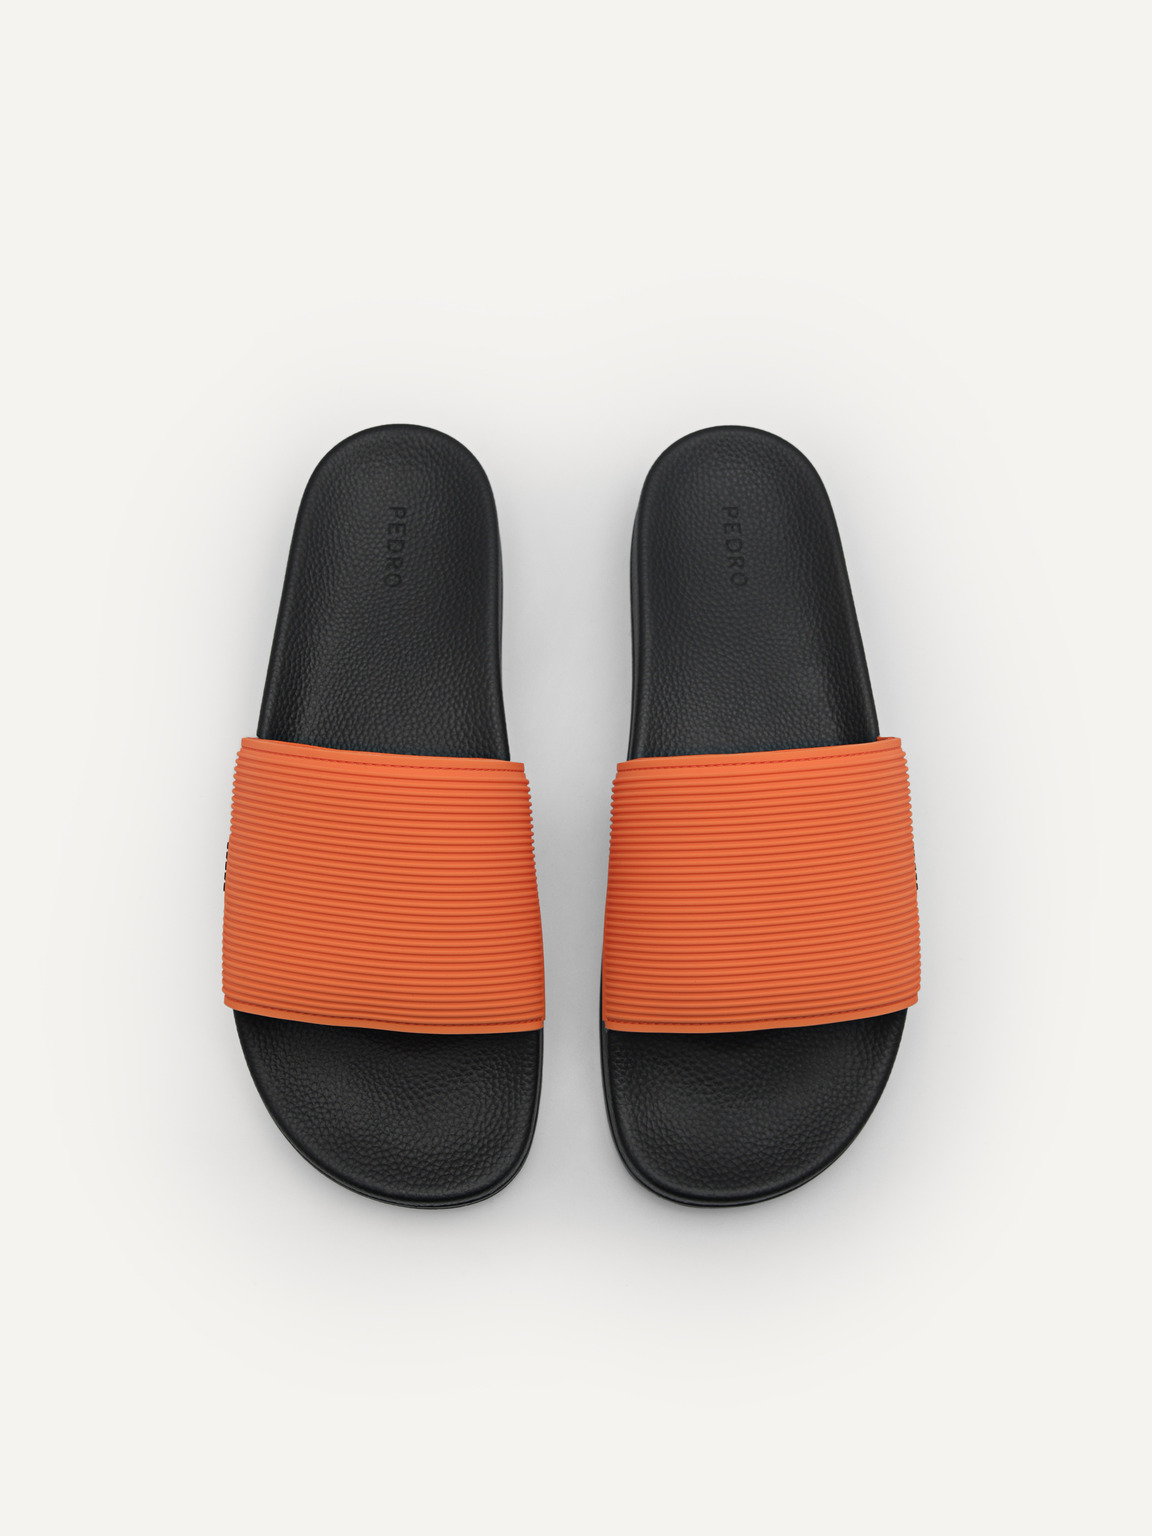 Slide Sandals, Orange